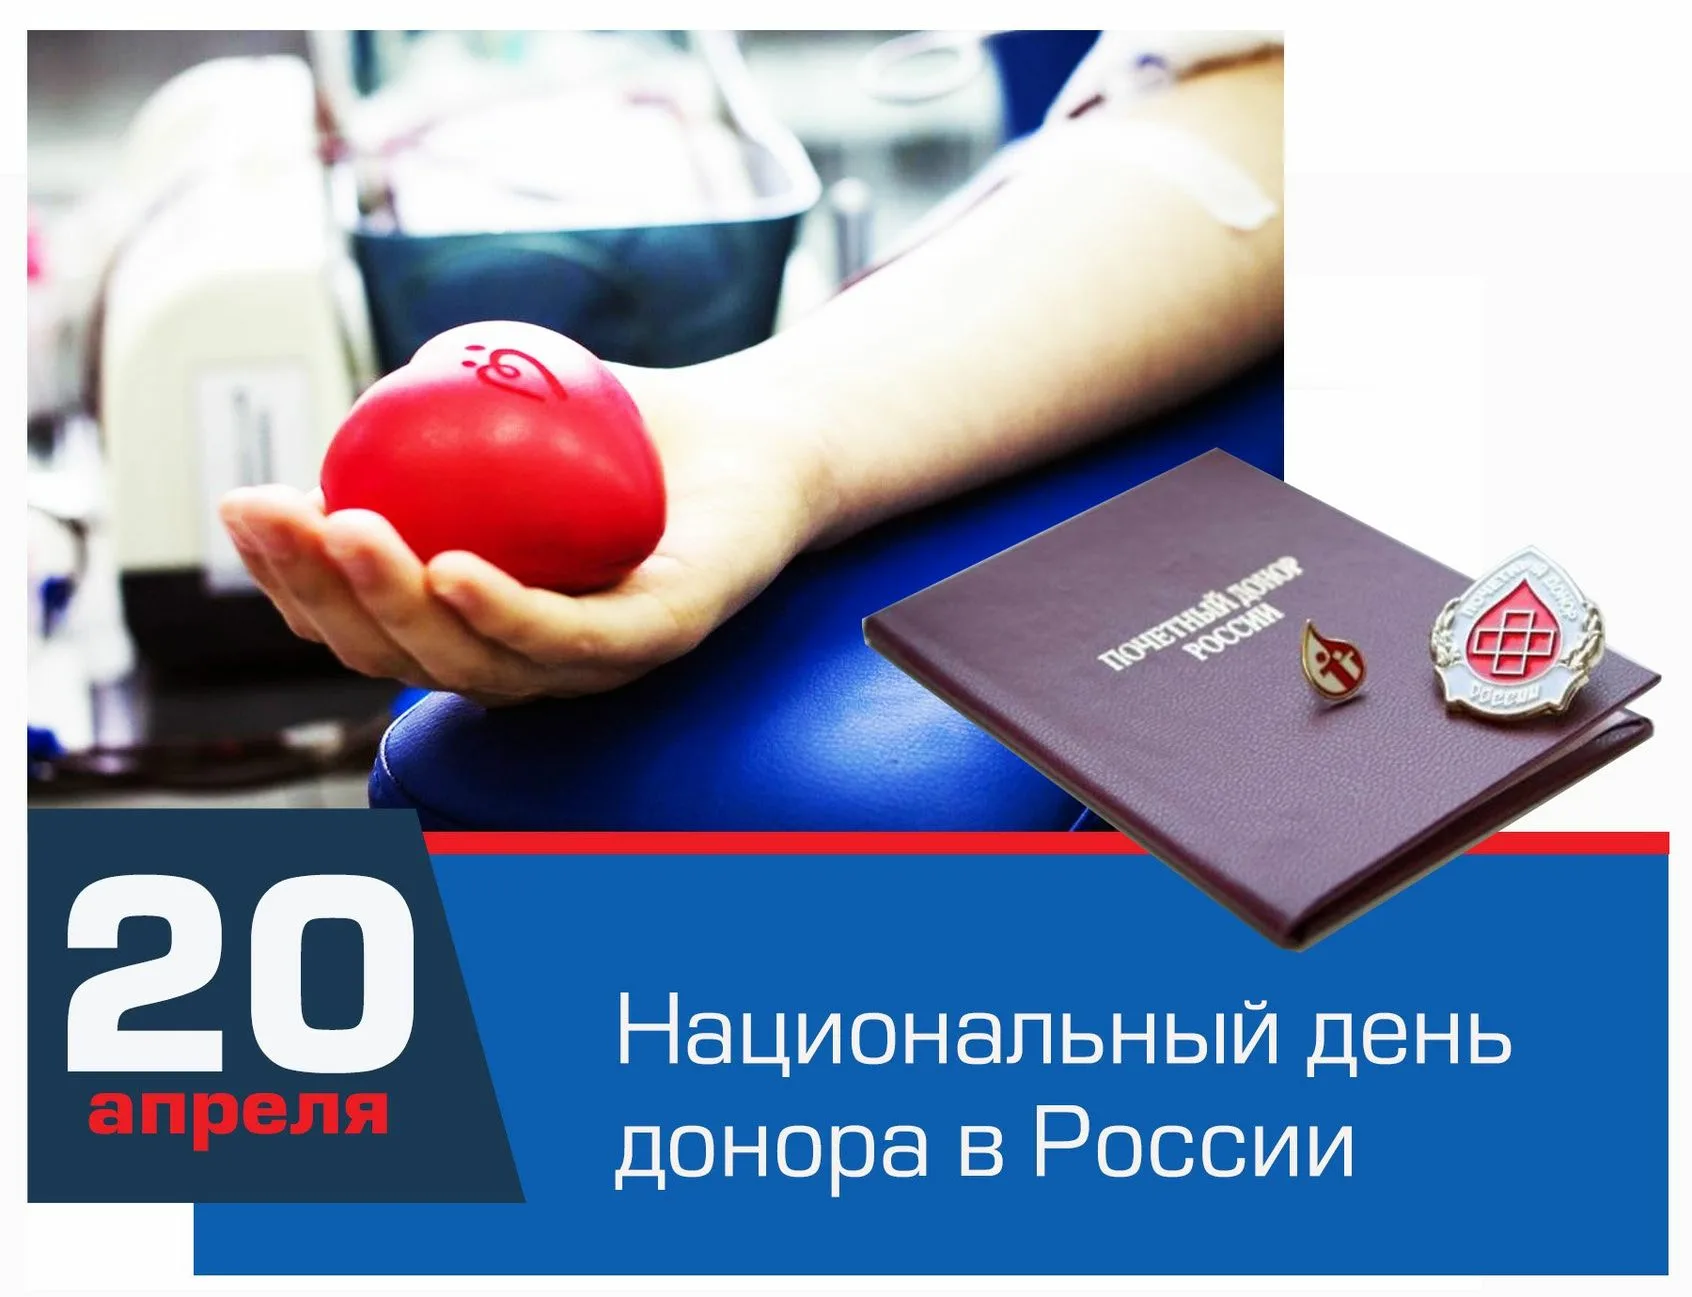 Внешний донор. Национальный день донора. 20 Апреля день донора. Национальный день донора крови в России. День донора крови 20 апреля.